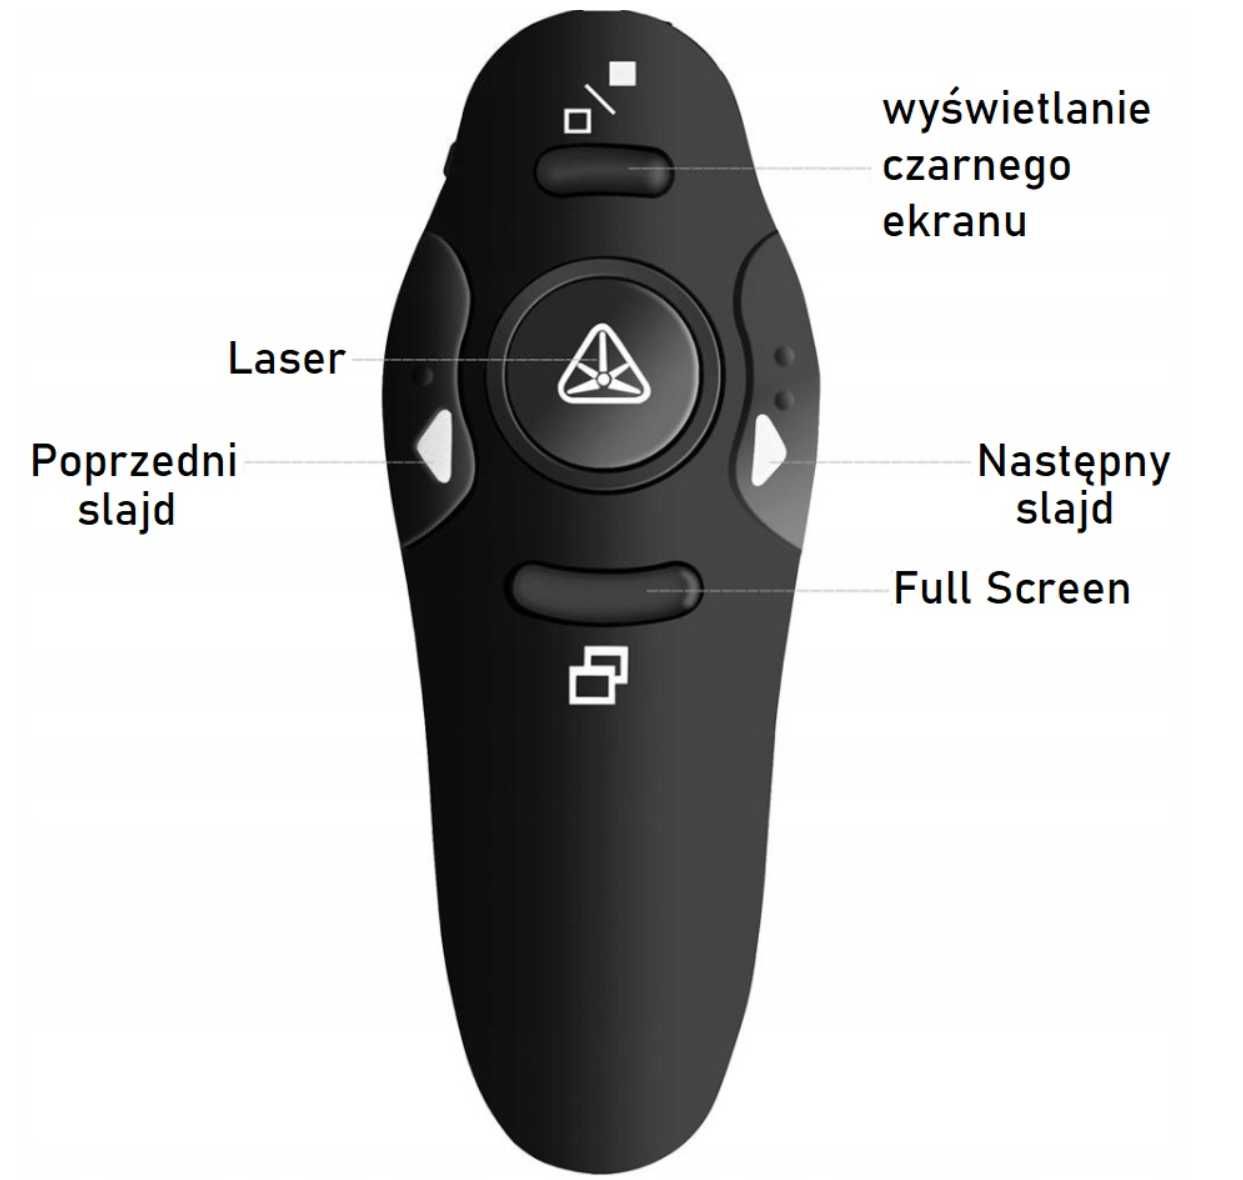 Wskaźnik laserowy do prezentacji, prezenter USB *przesyłka OLX*